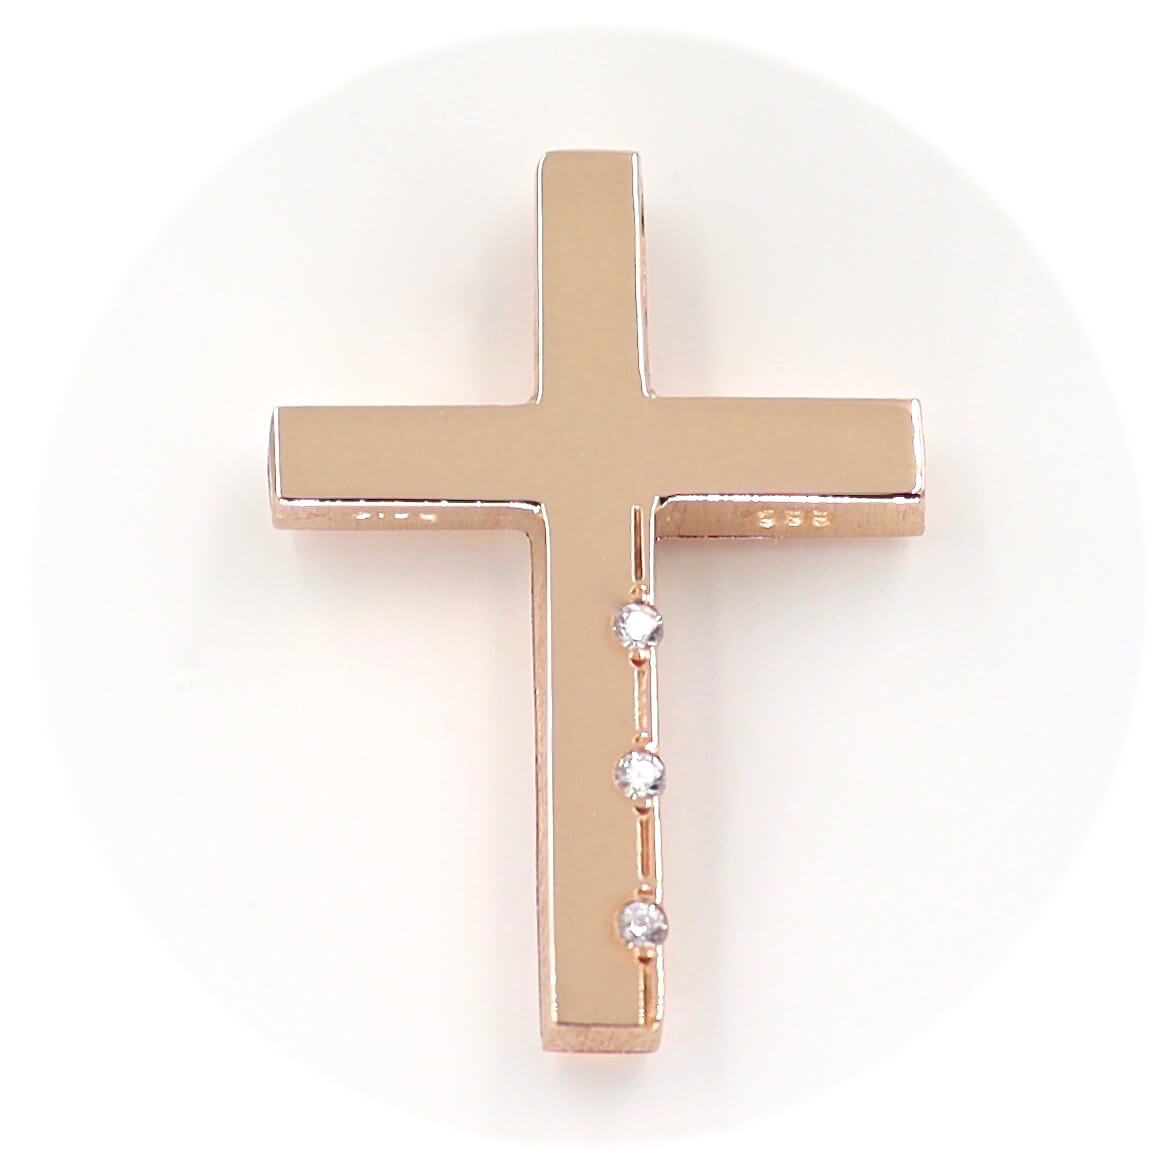 Ροζ χρυσός βαπτιστικός σταυρός Τριάντος